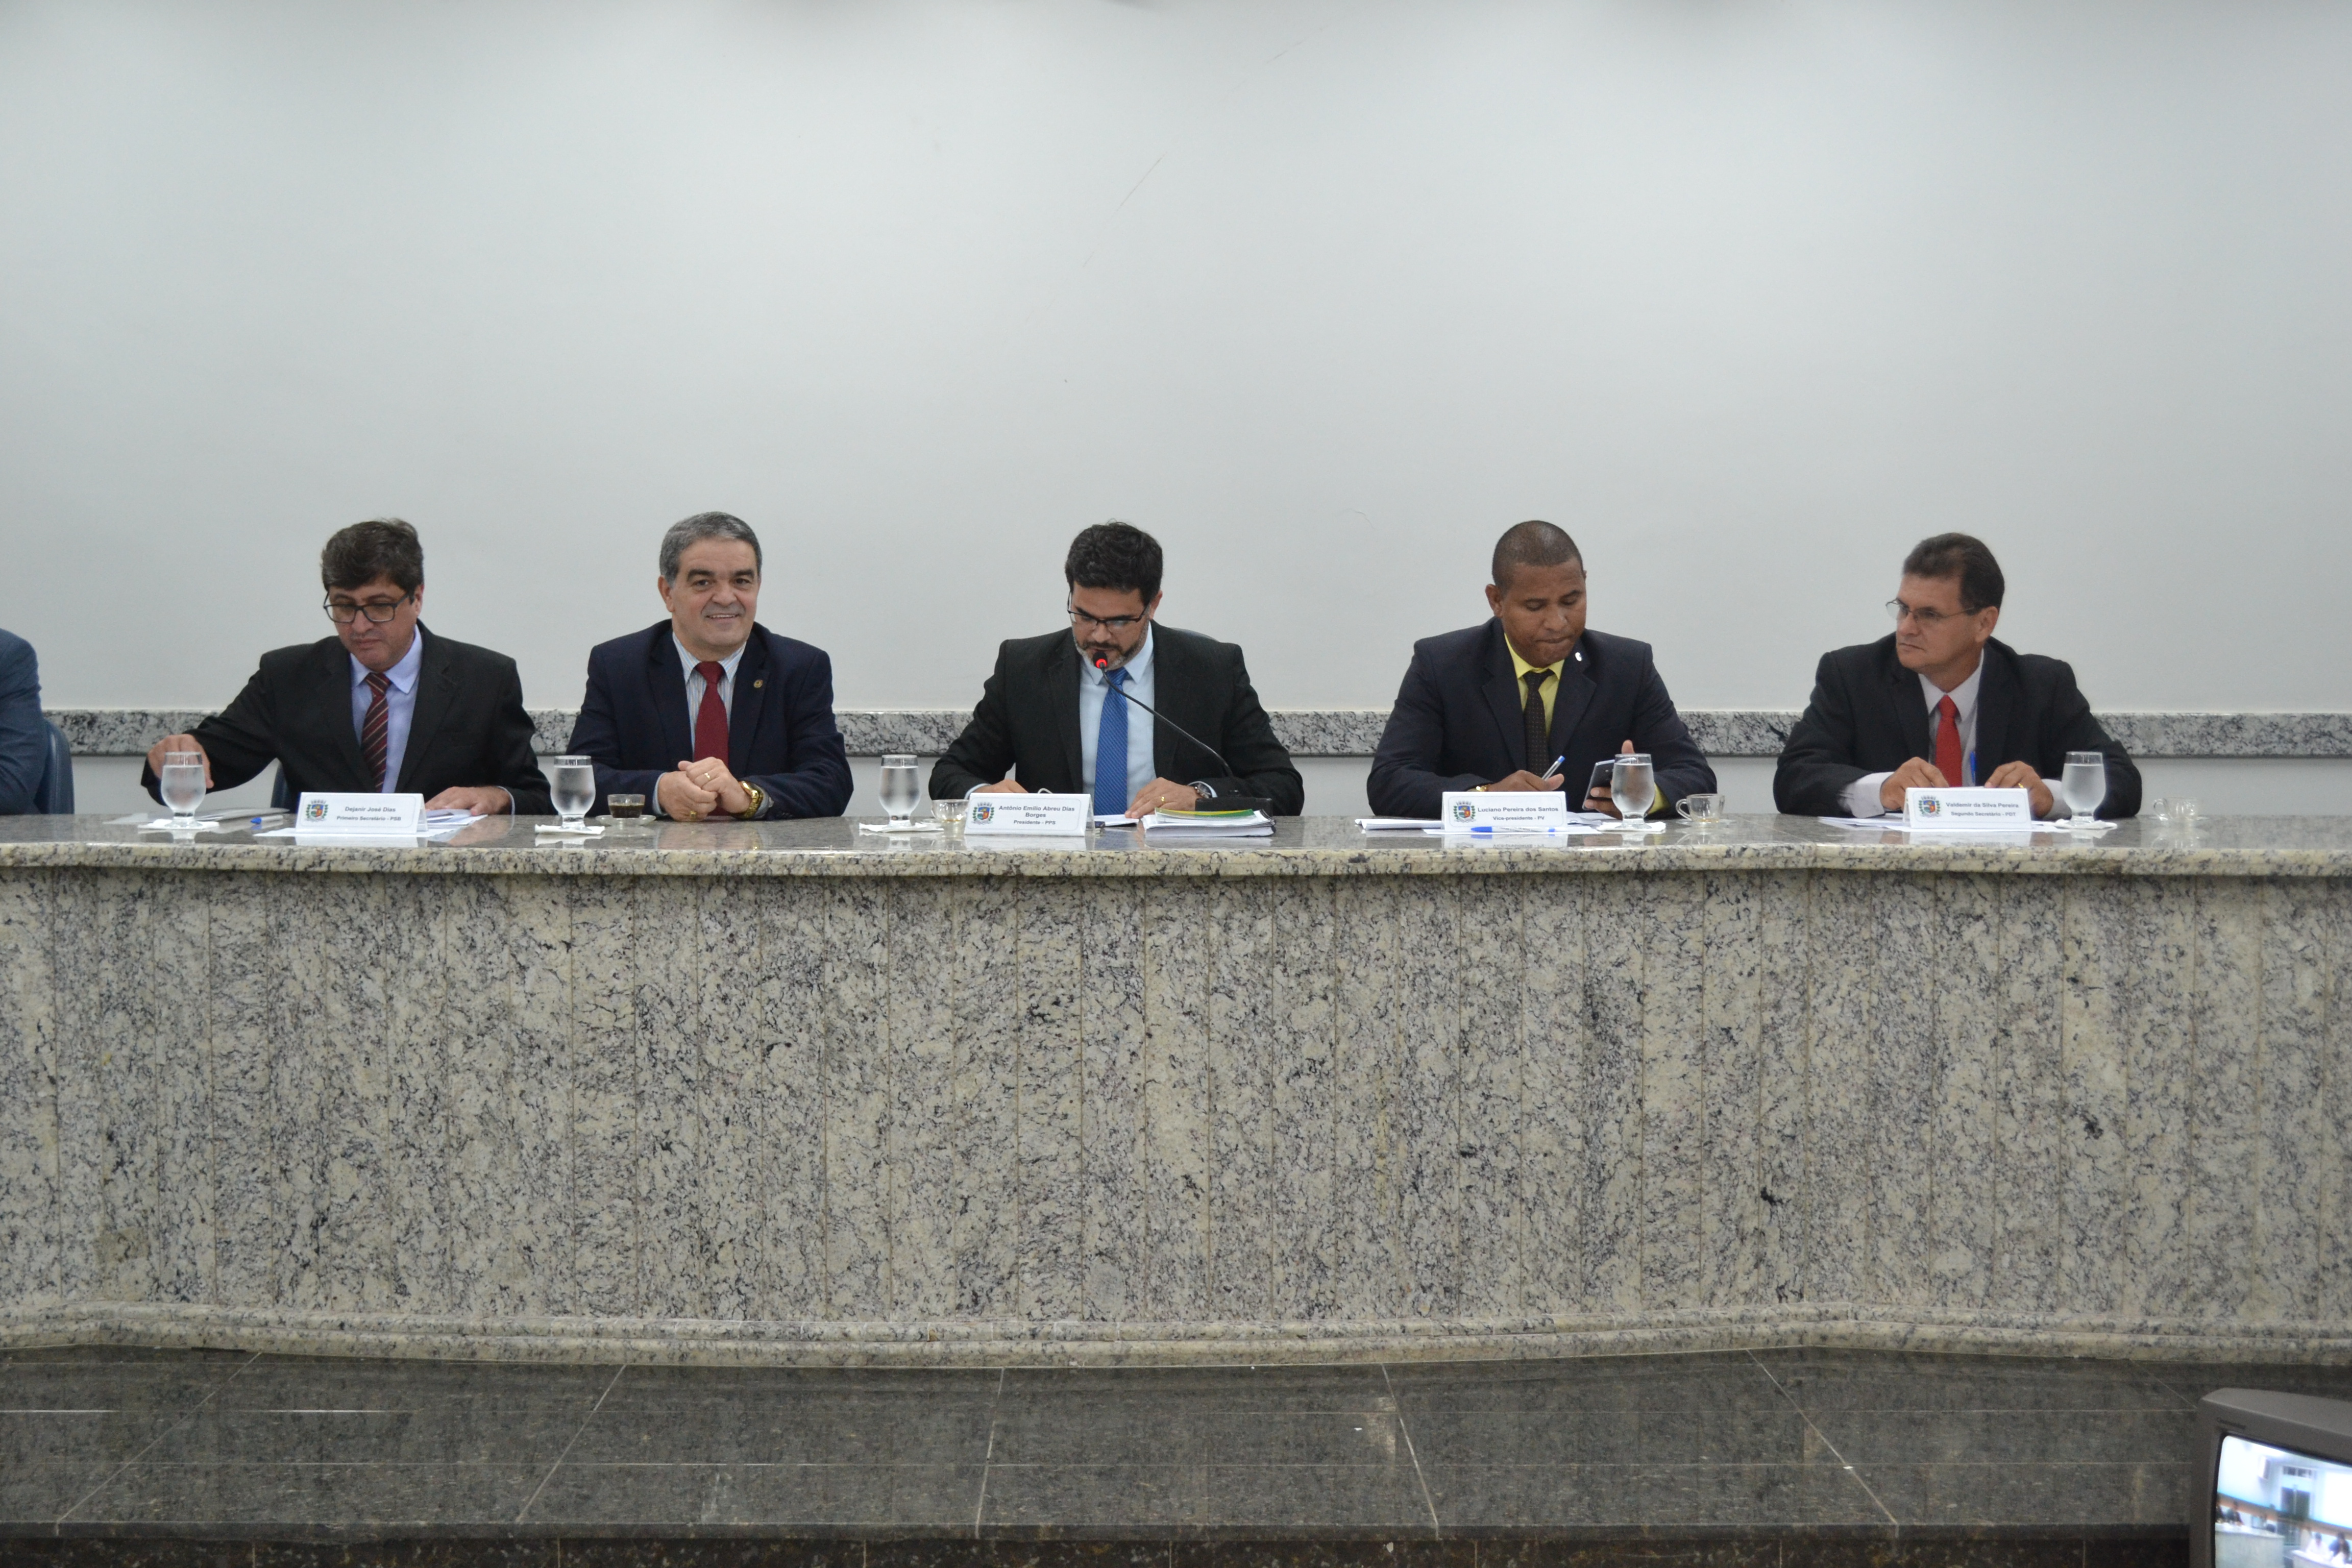 Veneciano deputado estadual por Rondônia participa da sessão